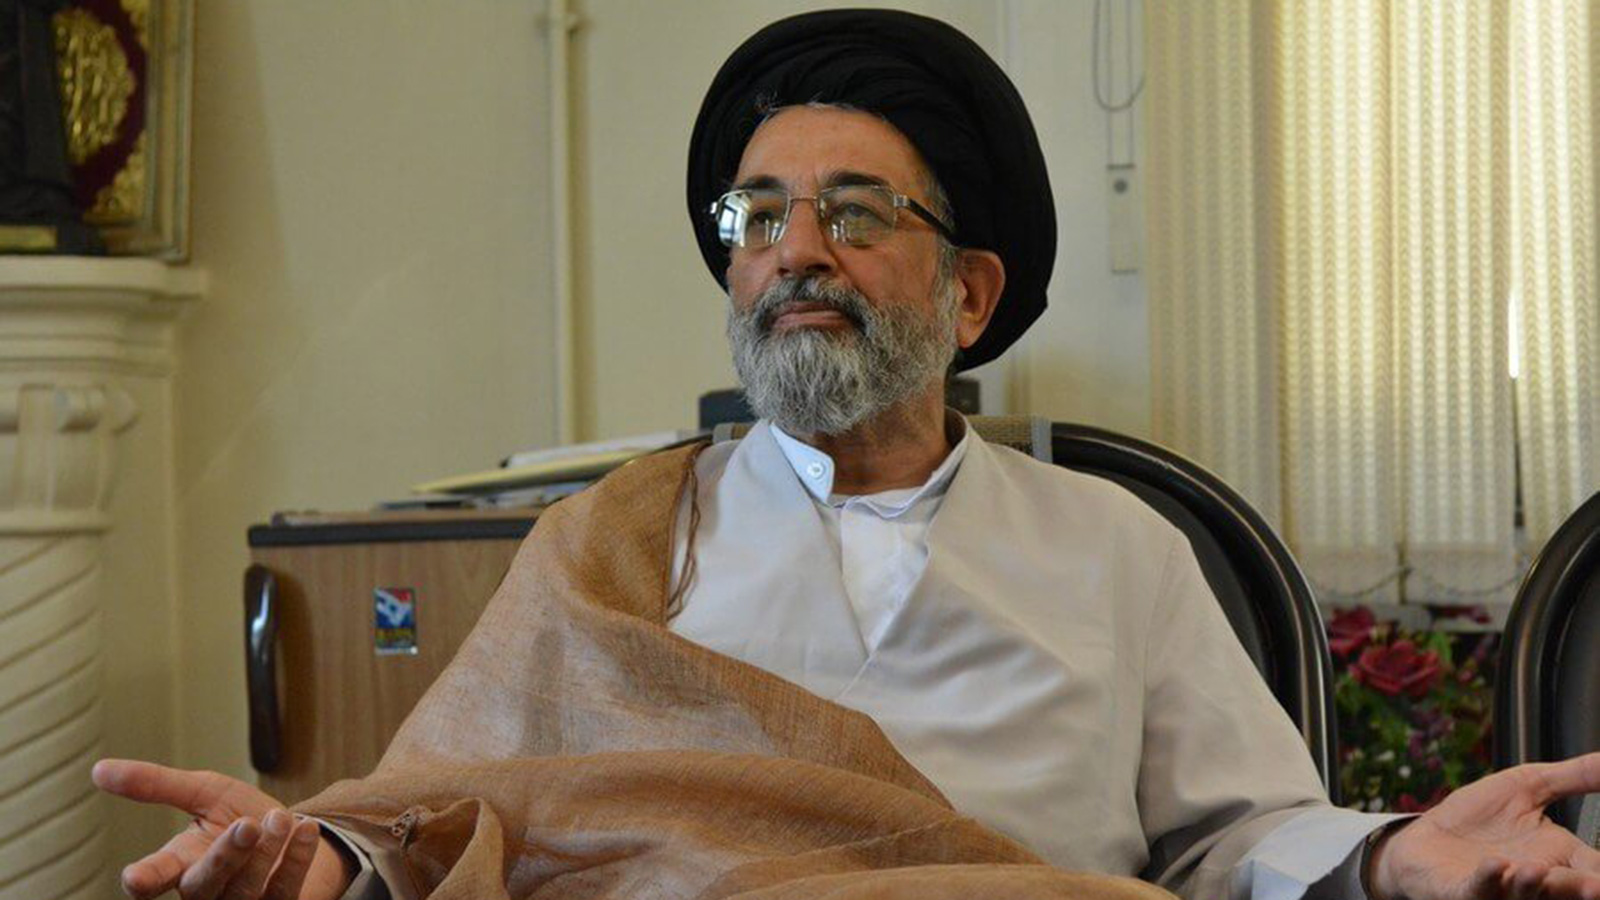 ‪موسوي لاري يعتبر رفض أهلية الإصلاحيين يشكل تطورا خطيرا على المستقبل‬ (الصحافة الإيرانية)